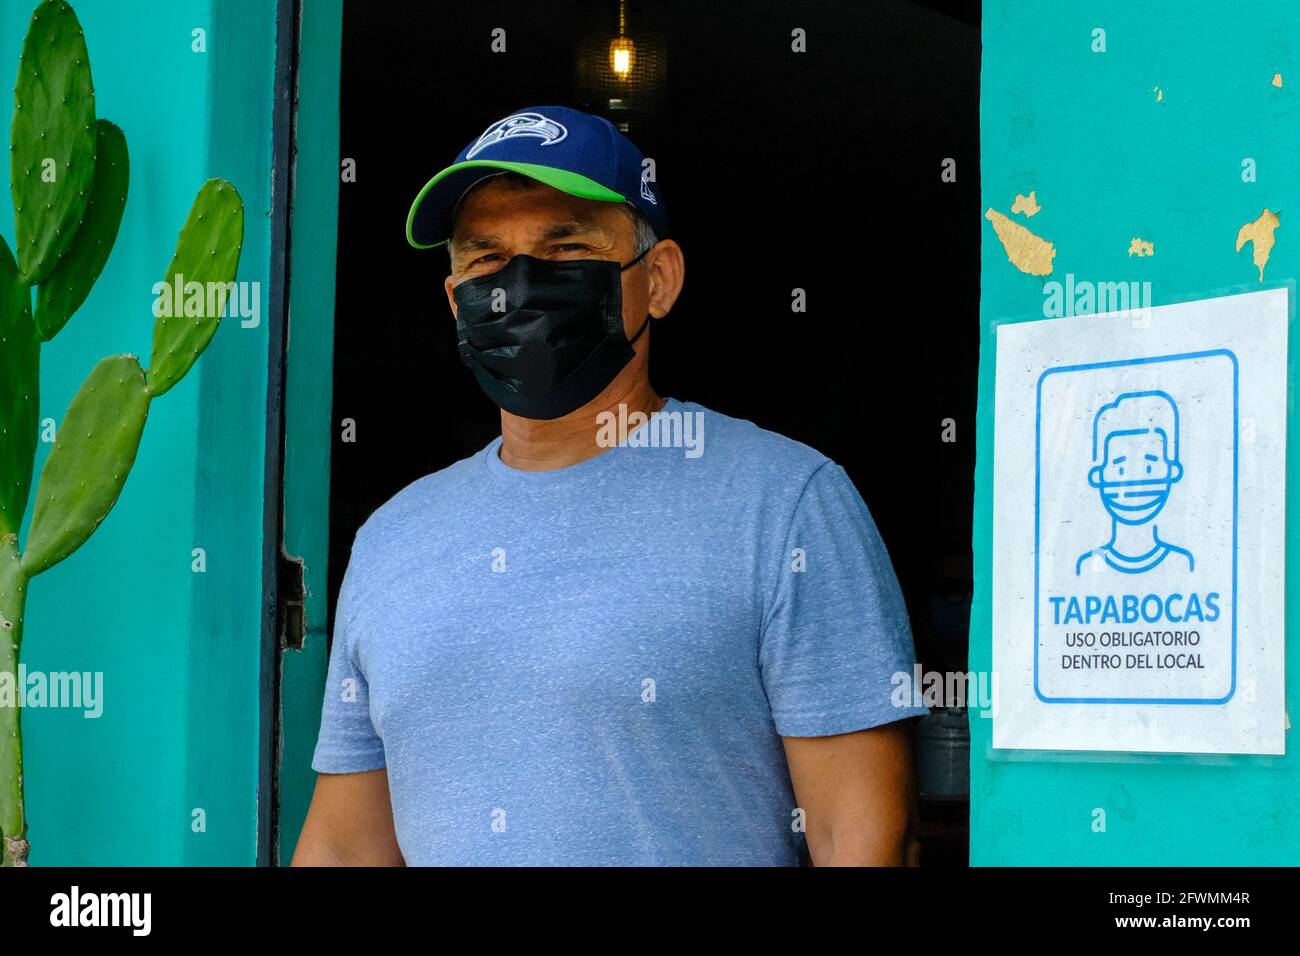 Mann mit Maske und öffentlicher Bekanntmachung, die Menschen dazu anweist, beim Betreten des Establishments, Merida Mexico, eine Maske zu tragen Stockfoto